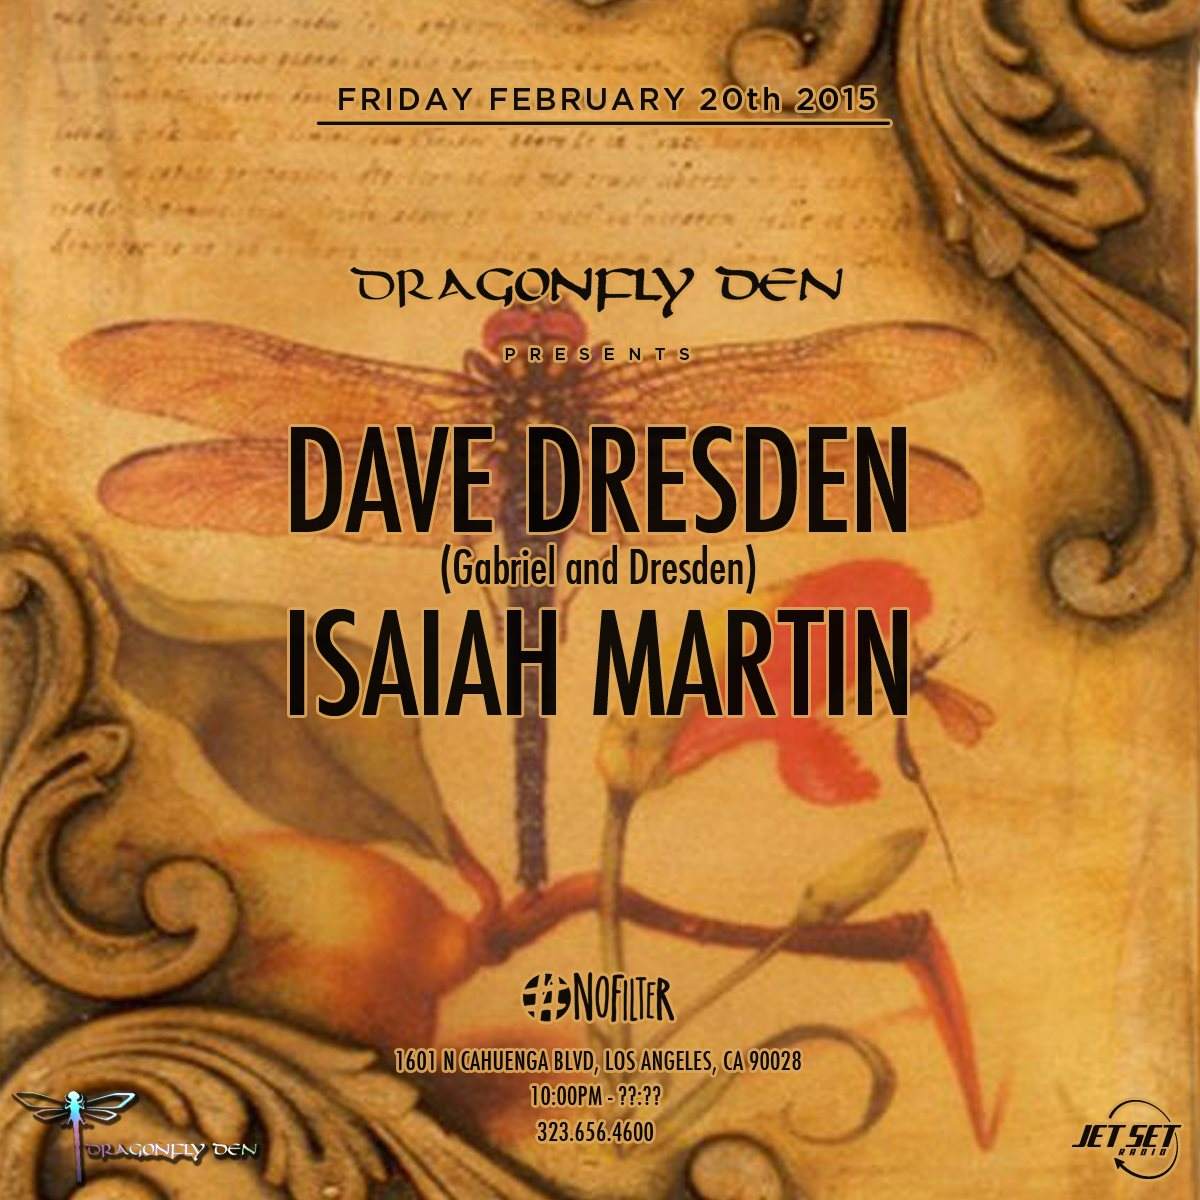 Dragonfly Den presents Dave Dresden & Isaiah Martin - フライヤー表